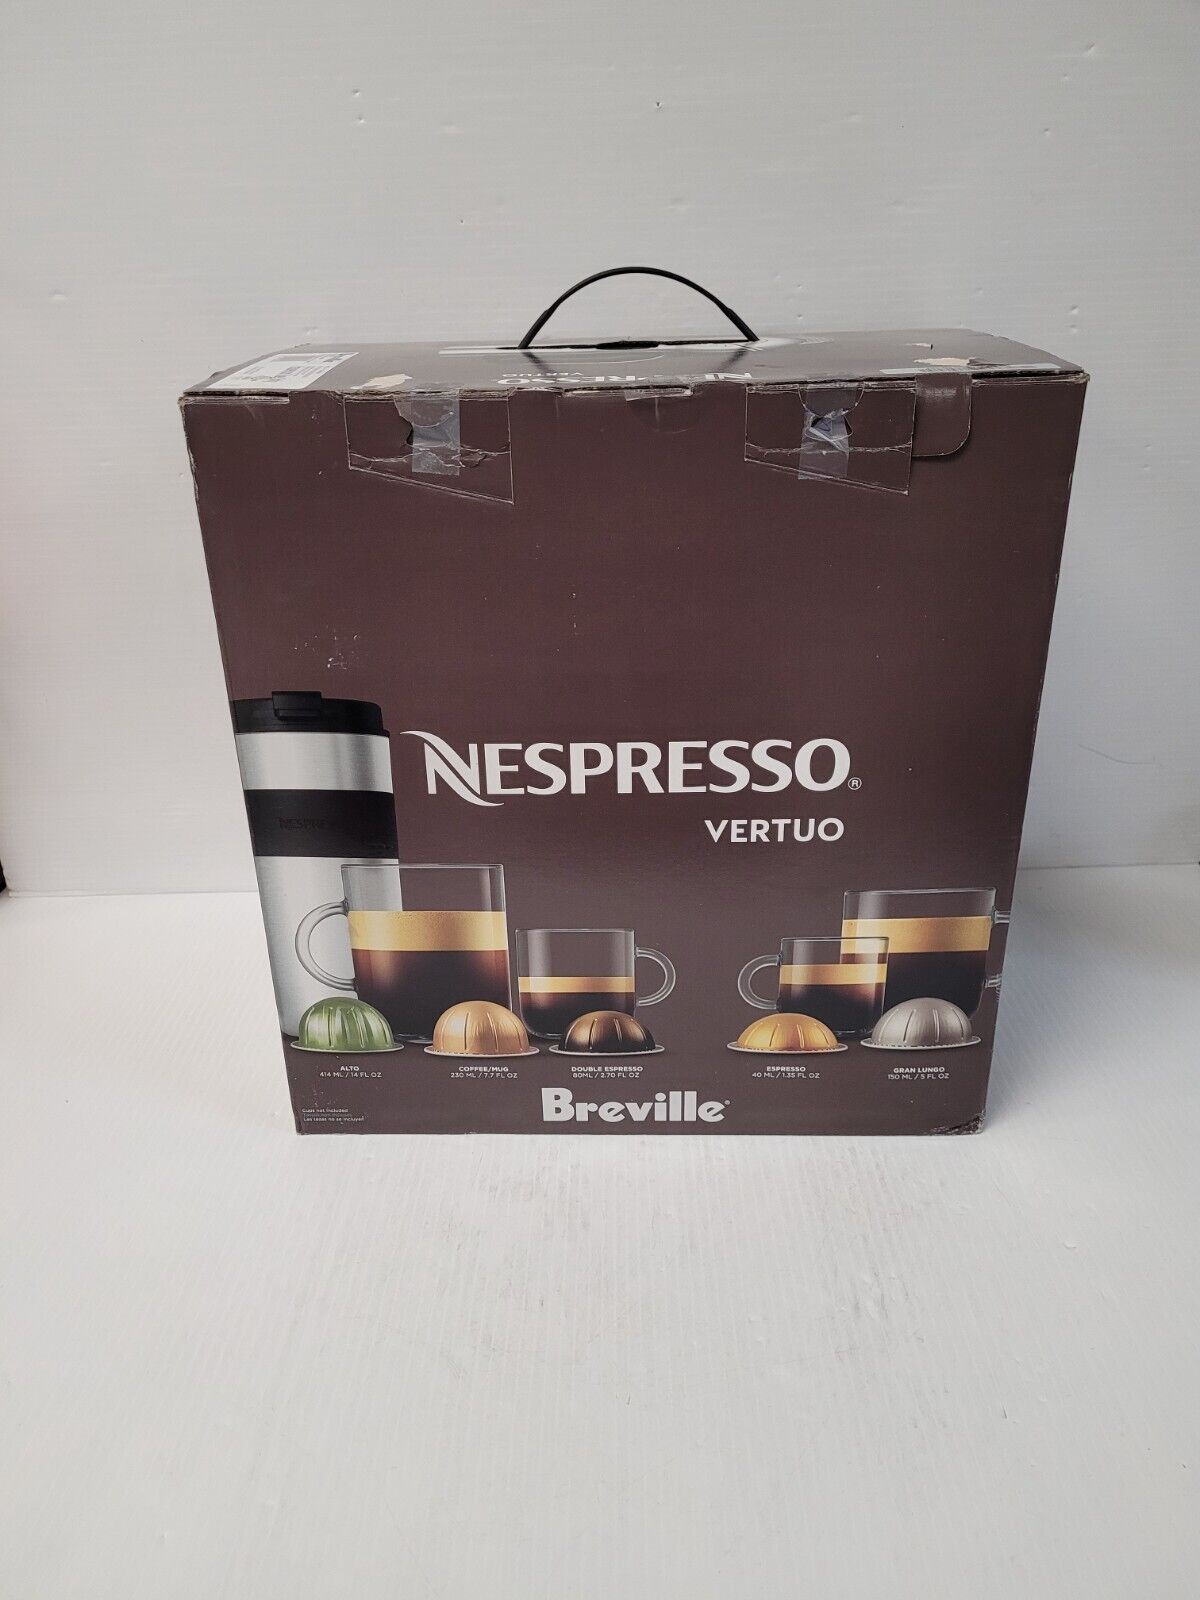 (N79023-1) Breville Nespresso Vertuo Brewer